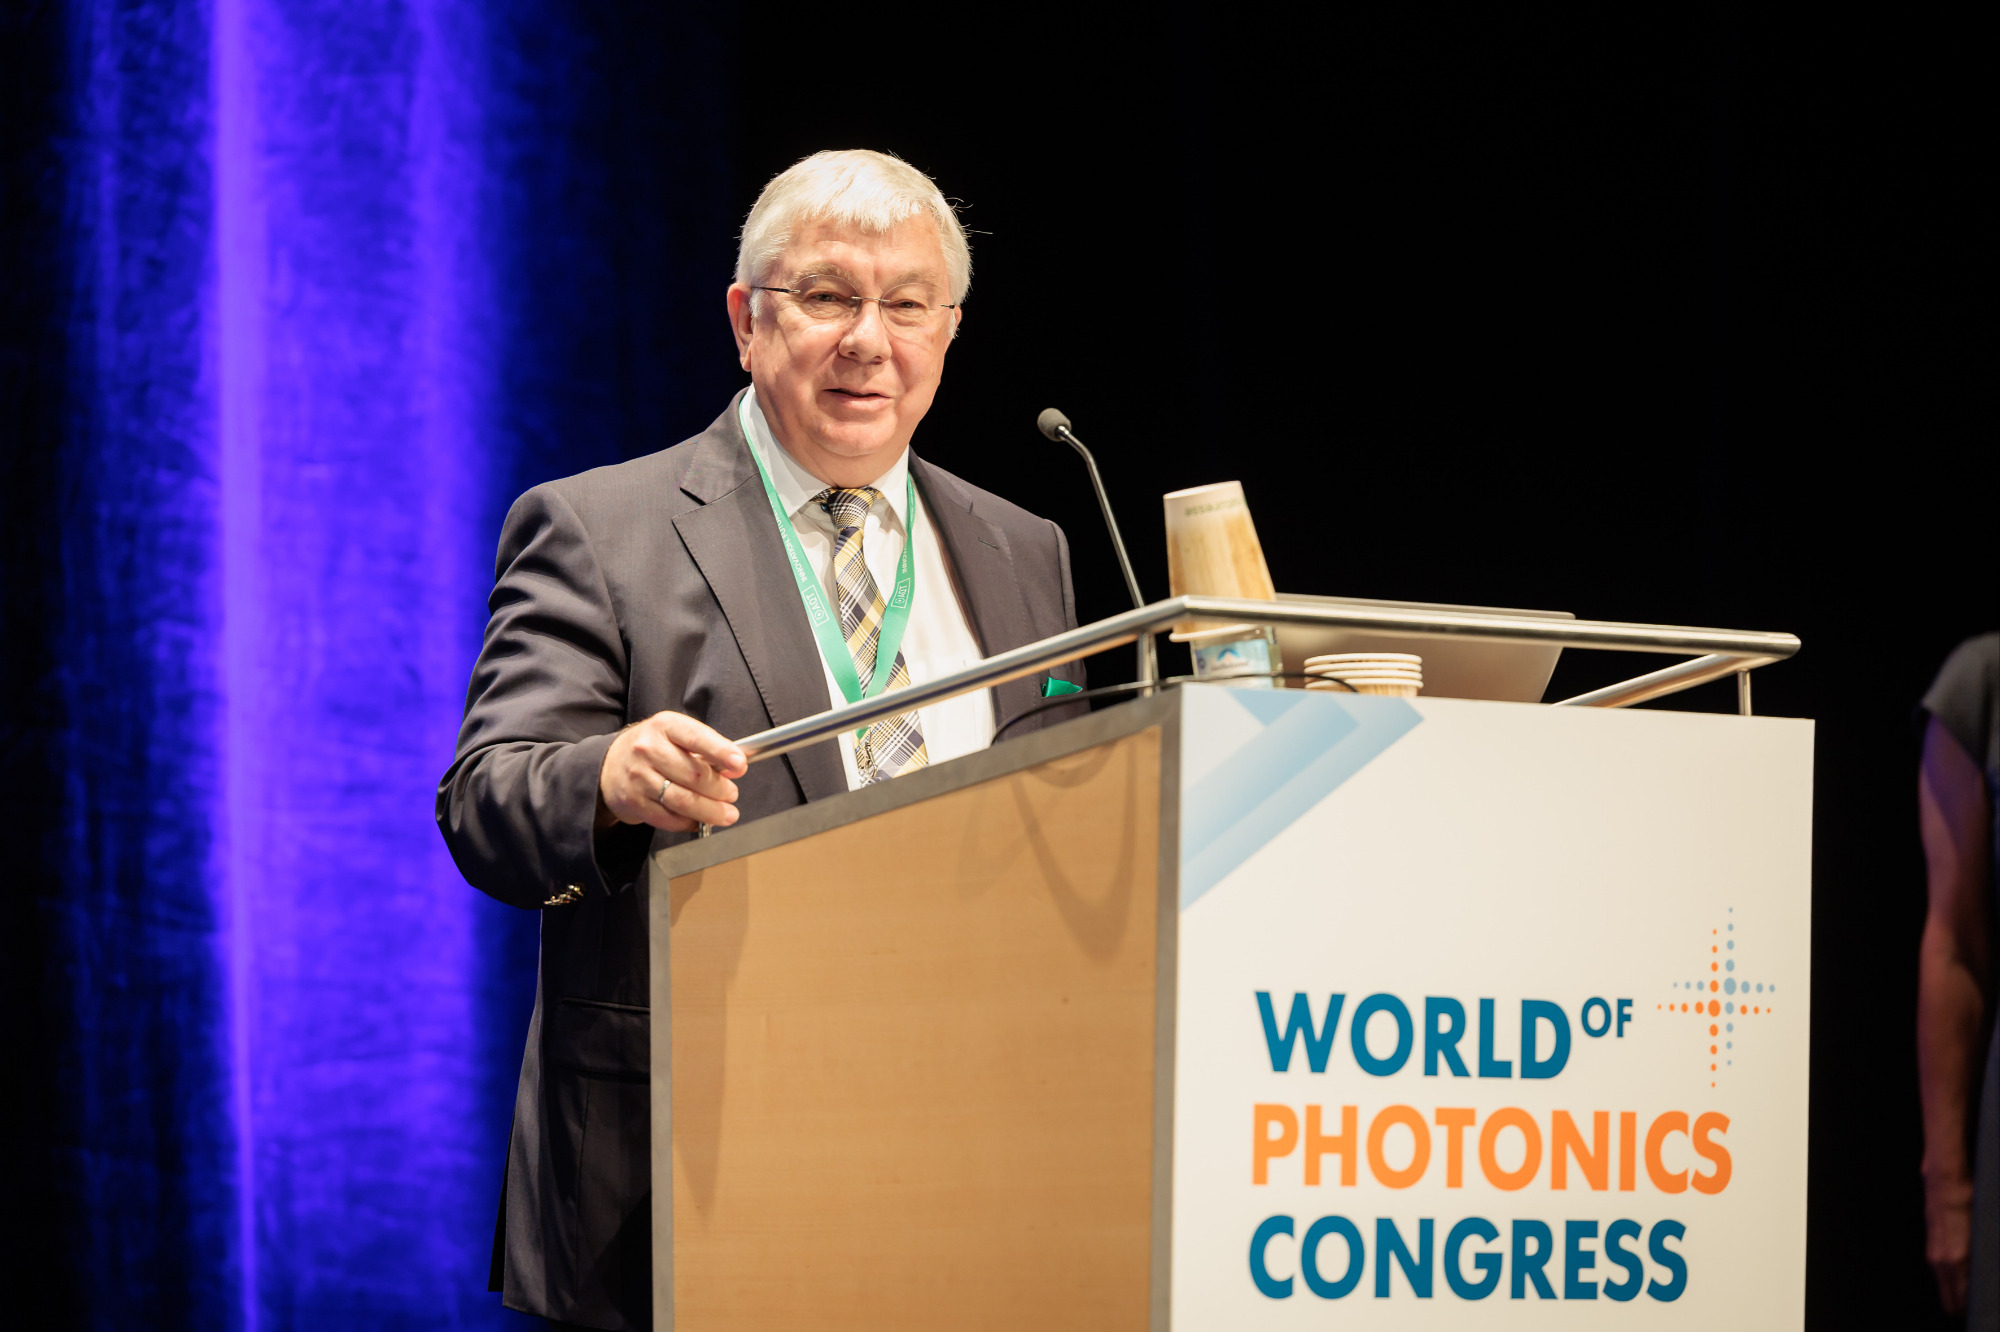 Preisträger Rainer Blatt bei der World of Photonics Konferenz in München.